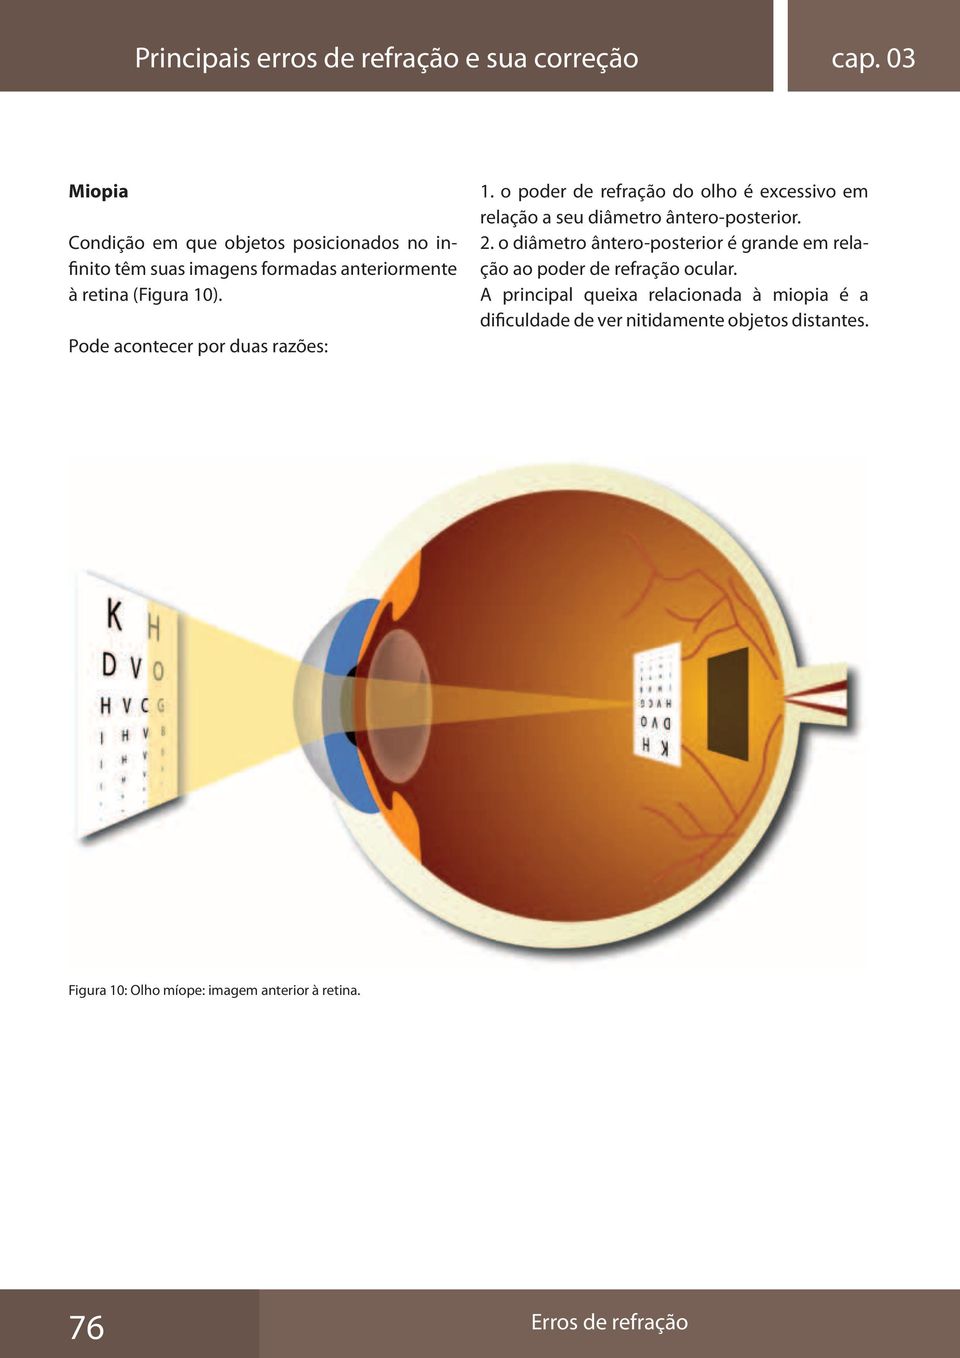 Pode acontecer por duas razões: 1. o poder de refração do olho é excessivo em relação a seu diâmetro ântero-posterior. 2.